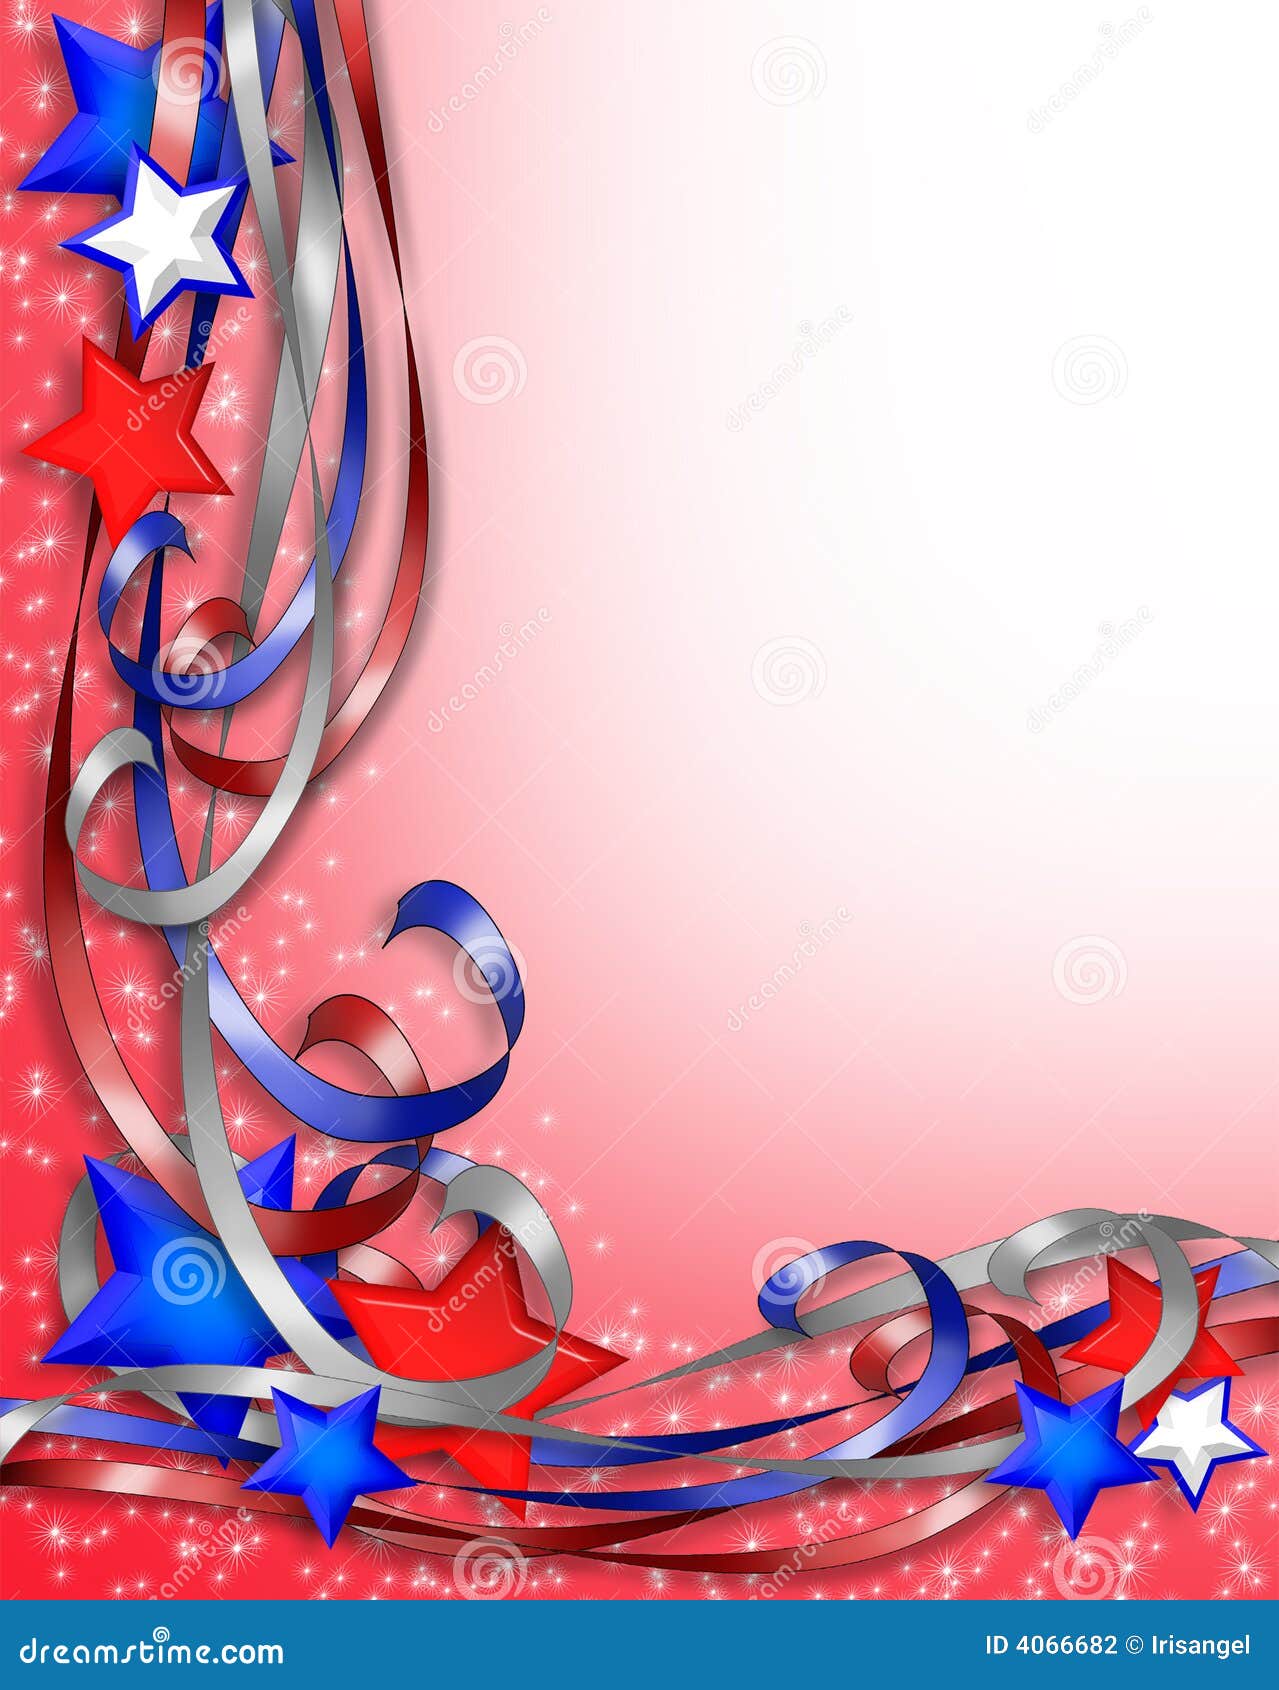 patriotic border stars and ribbons